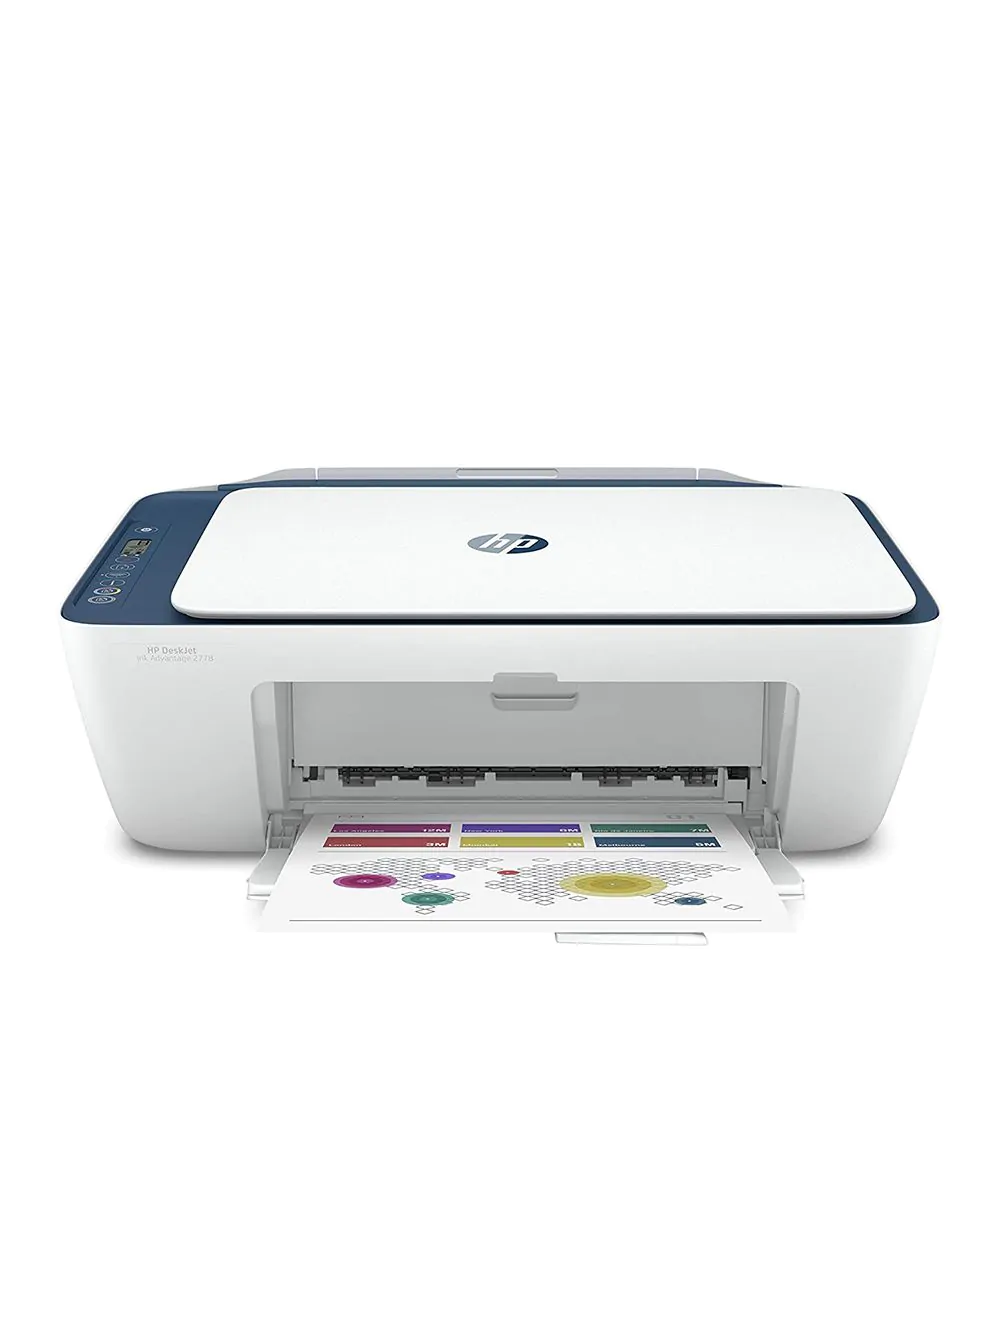 Vend om Surrey Mælkehvid Buy HP DeskJet Ink Efficient 2778 Printer at Best Price